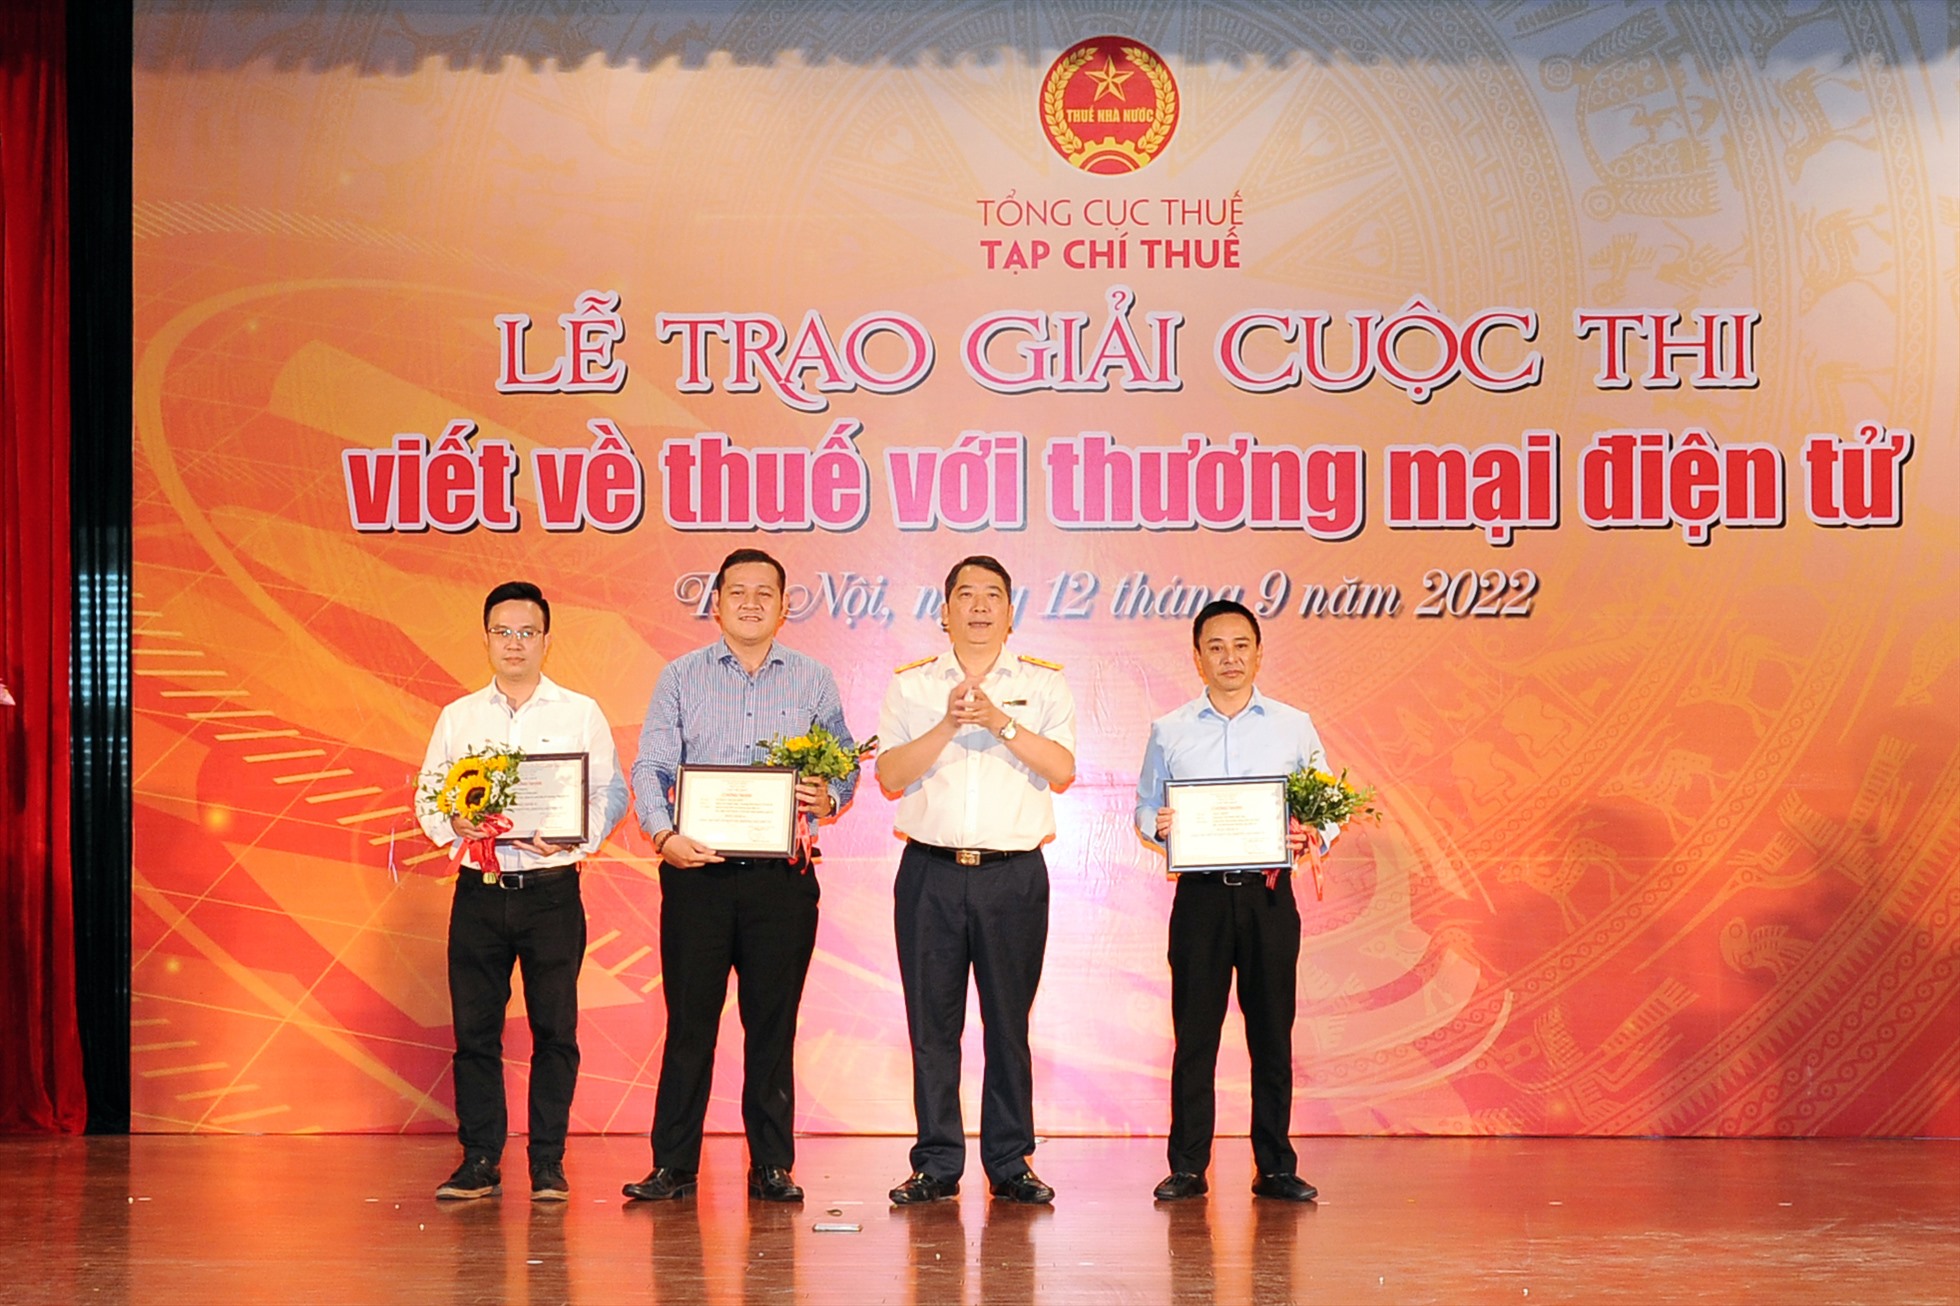 Tổng Cục trưởng Tổng cục Thuế Cao Anh Tuấn trao giải cho các tác phẩm xuất sắc. Ảnh: TCT.